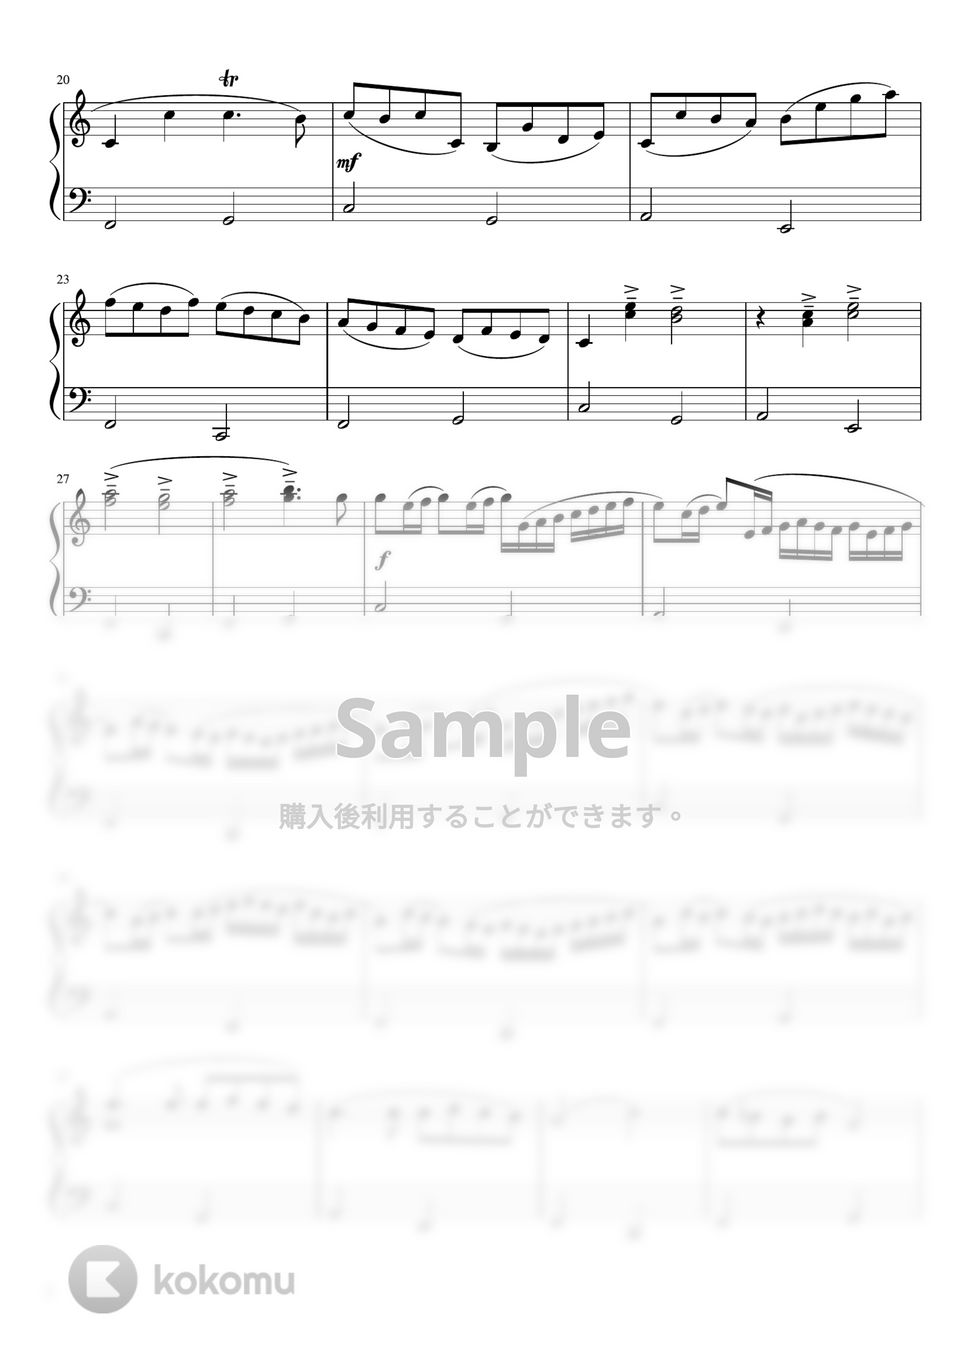 パッヘルベル - カノン (Cdur・ピアノソロ初級) by pfkaori